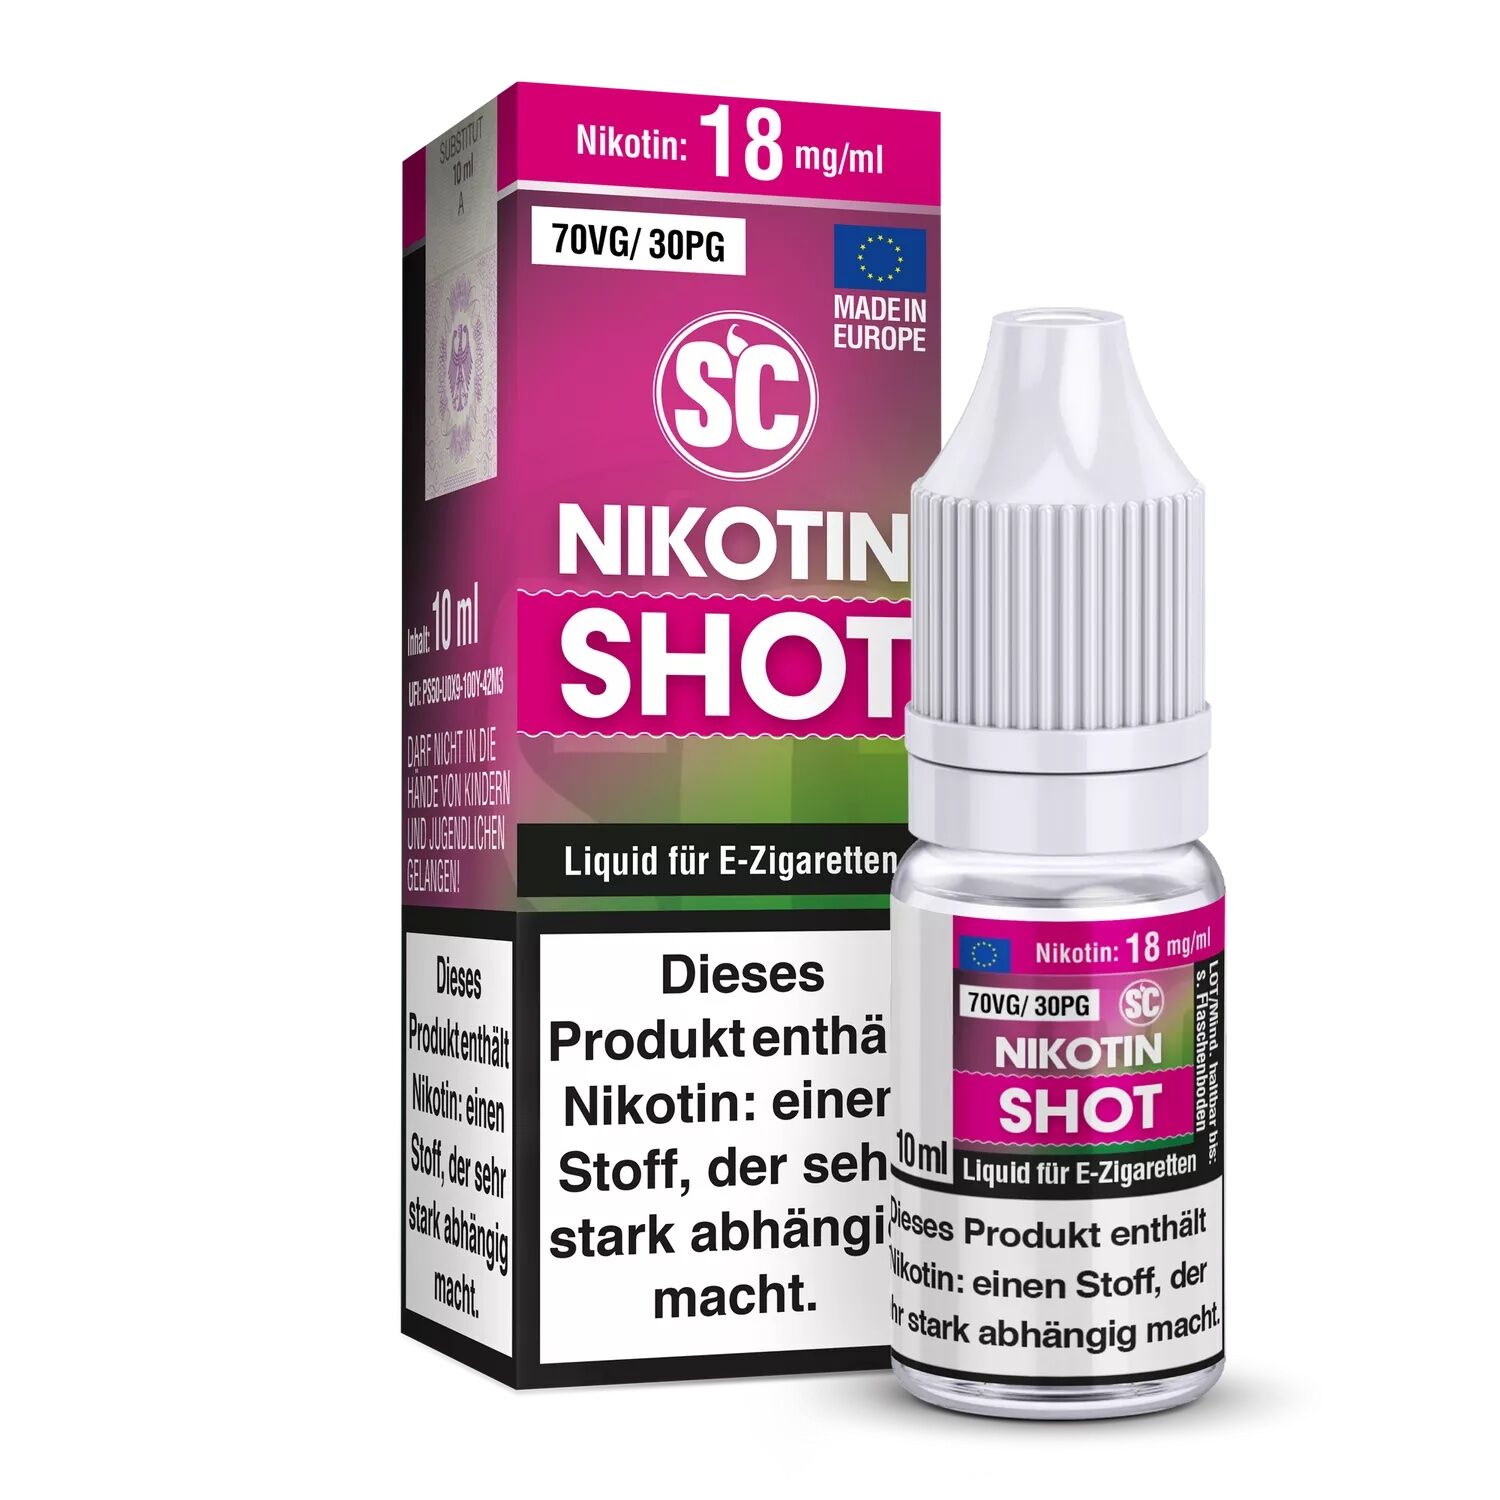 SC Nikotinshot 70/30 - 18mg/ml